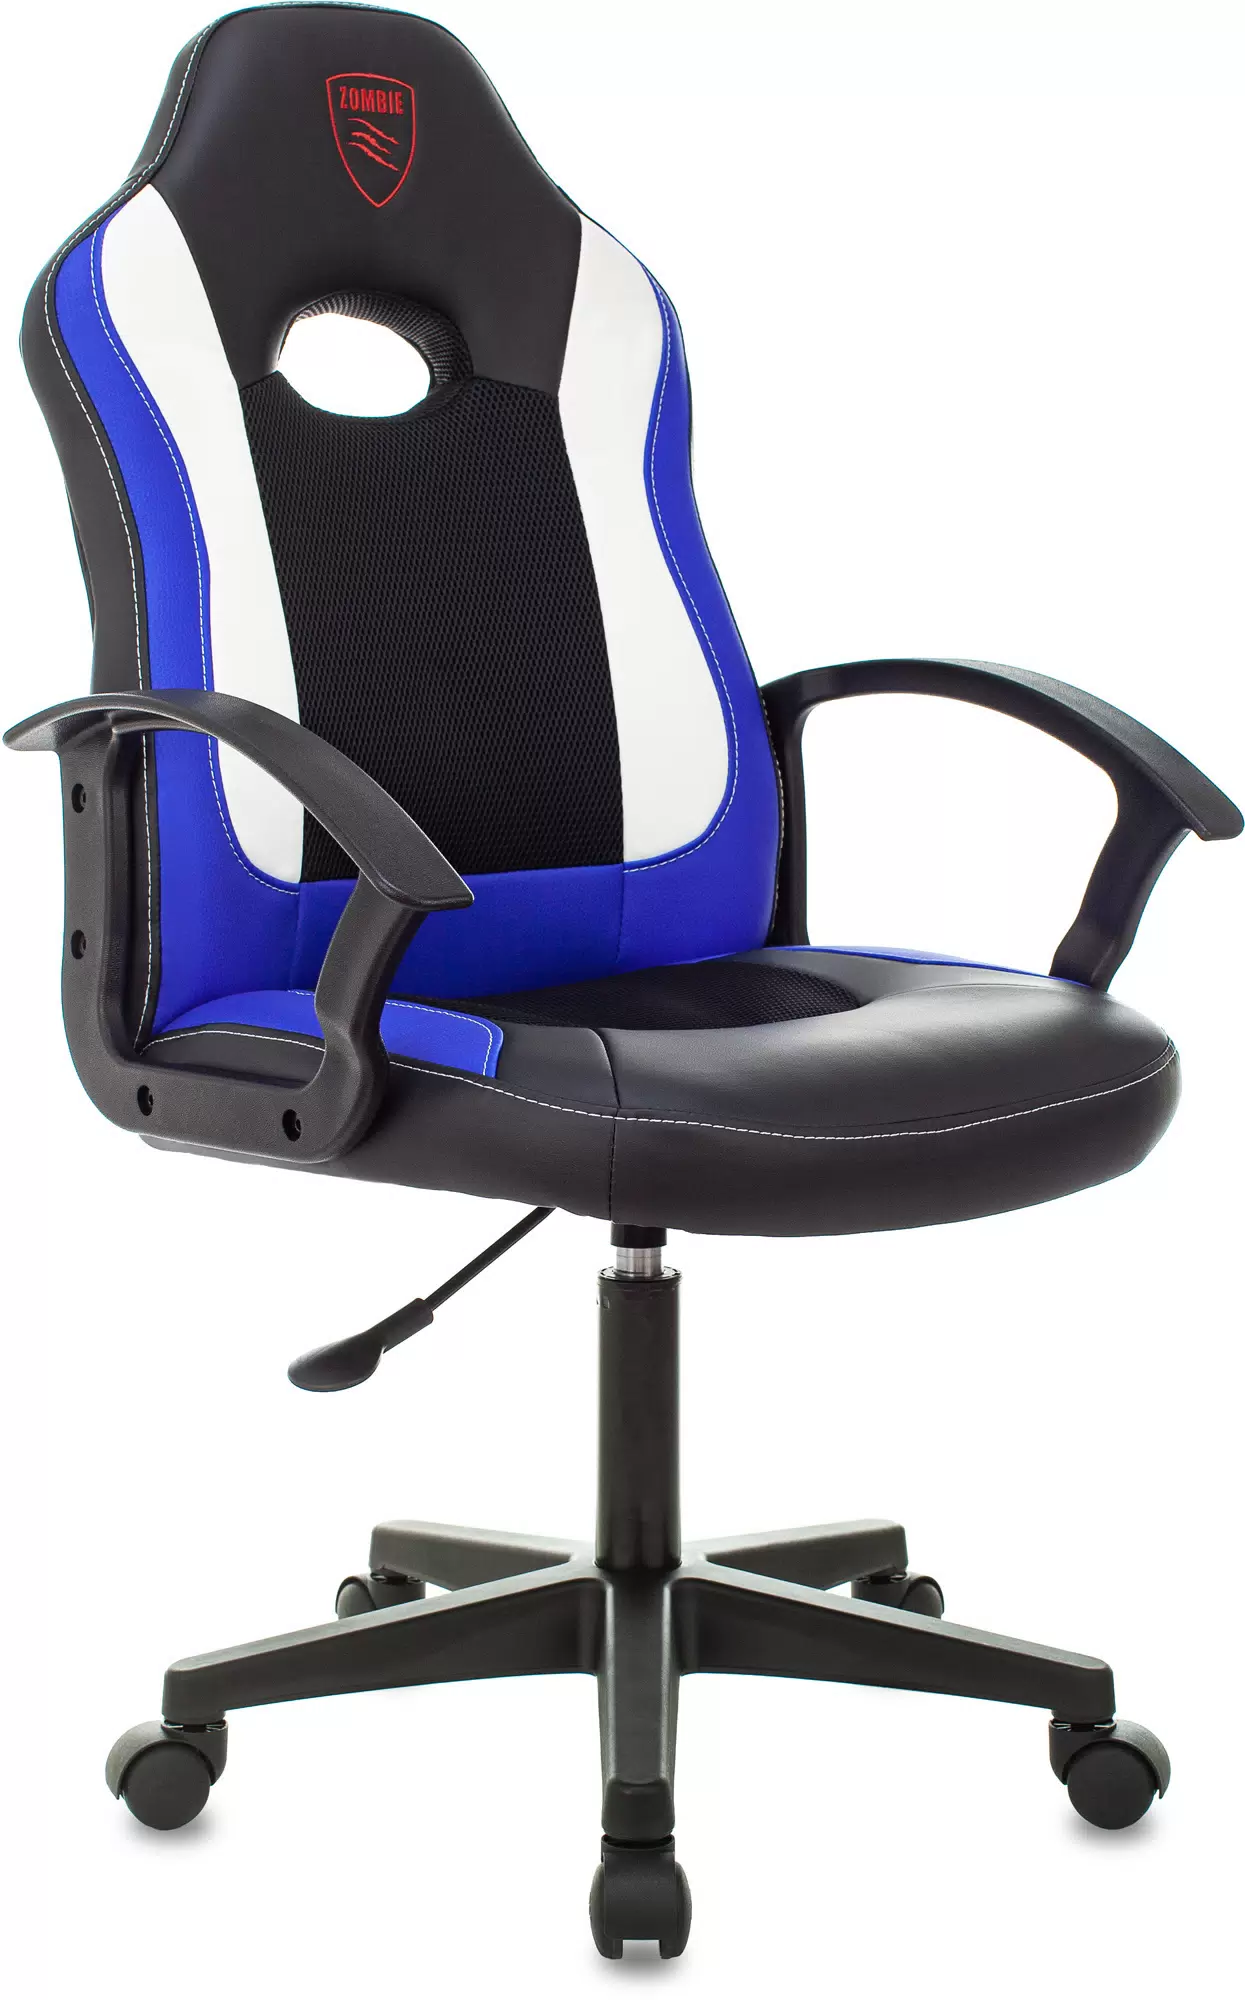 Купить Характеристики - кресло игровое ZOMBIE 11LT BLUE черный/синий, текстиль/эко.кожа, крестовина пластик - Vlarnika